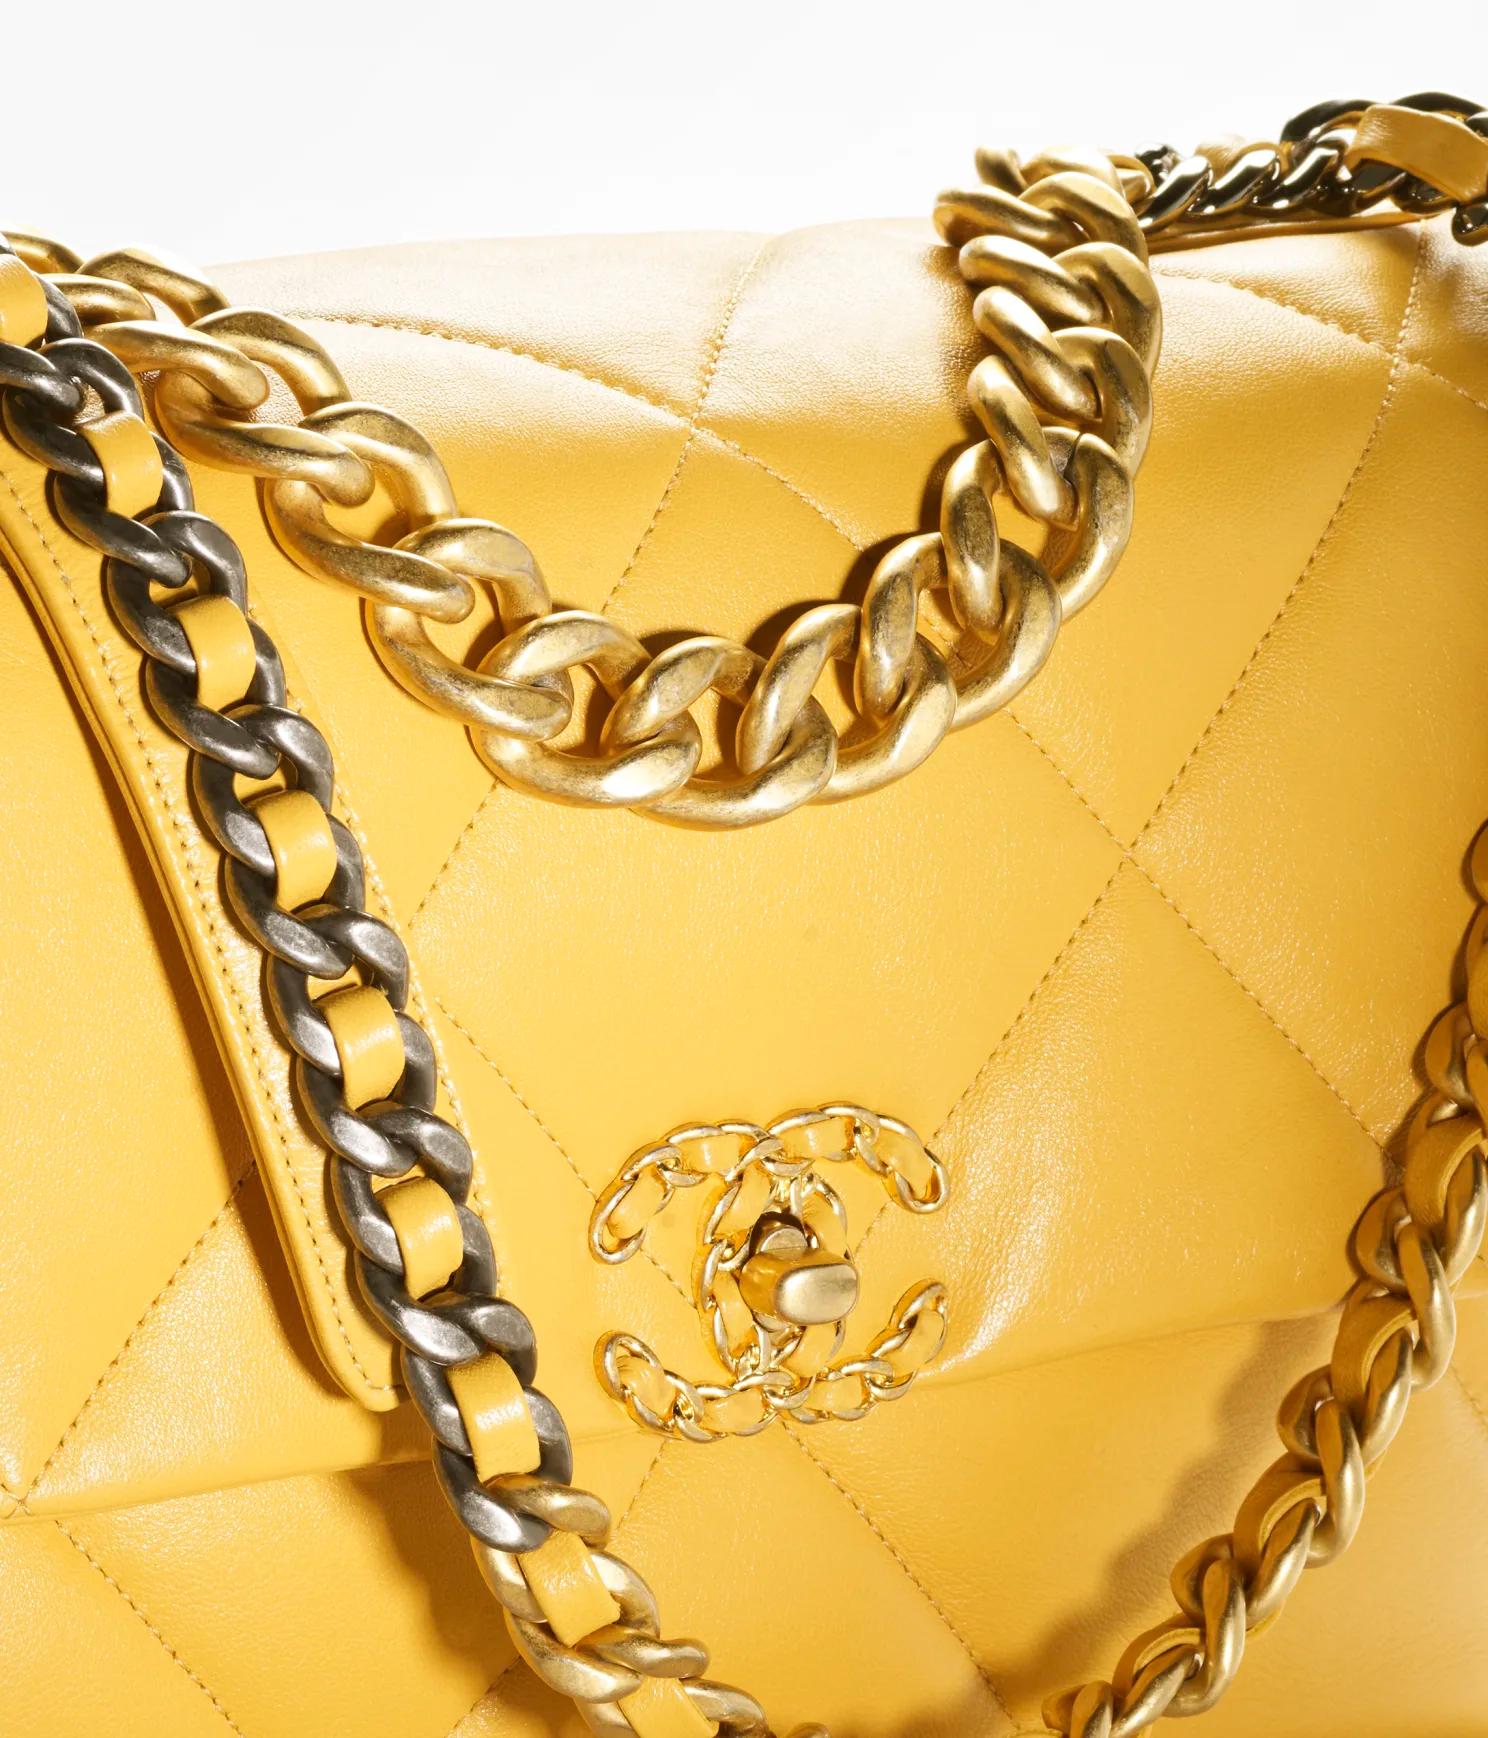 Túi Chanel Chanel 19 Large Handbag Shiny Lambskin & Ruthenium-Finish Metal Nữ Vàng Đậm